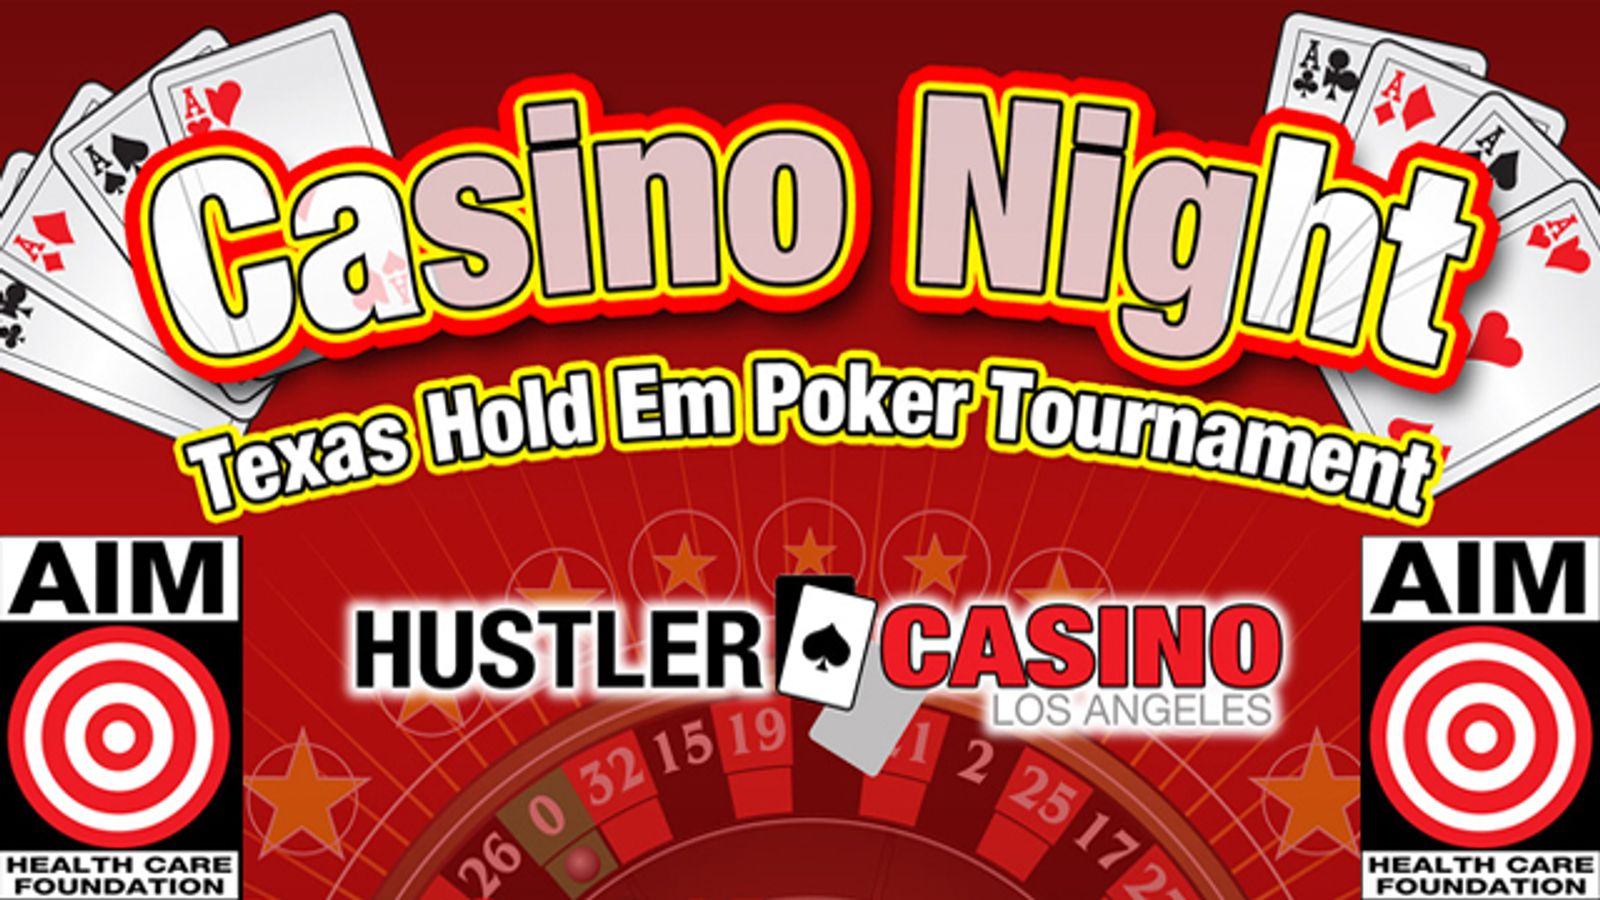 Hustler Casino to Host AIM Fundraiser